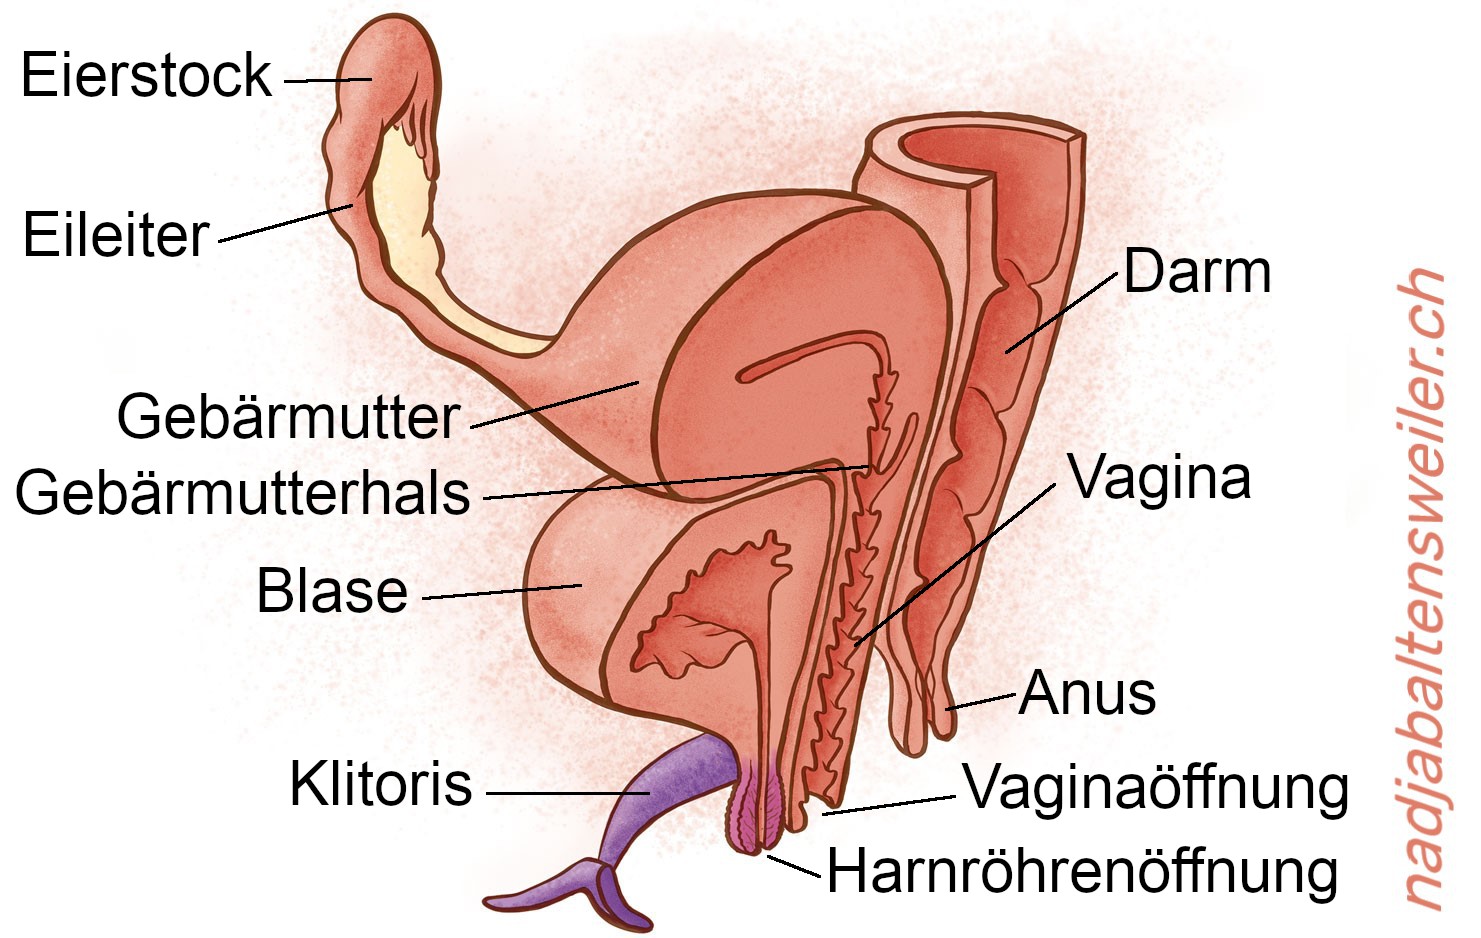 Du siehst einen Längsschnitt durch Geschlechtsorgane. Ganz vorne ist die Klitoris mit ihren Schenkeln, dahinter ist die Harnröhrenöffnung und dahinter die Vaginaöffnung. Zuhinterst kommt der Anus. An den Anus schließt sich nach oben hin der Darm an. Am oberen Ende der Vagina liegt der Gebärmutterhals, der in die Gebärmutter führt. Seitlich der Gebärmutter schliesst sich der Eileiter und der Eierstock an. Oberhalb der Harnröhrenöffnung liegt die Blase. Sie liegt ausserdem vor der Vagina und unterhalb der Gebärmutter.